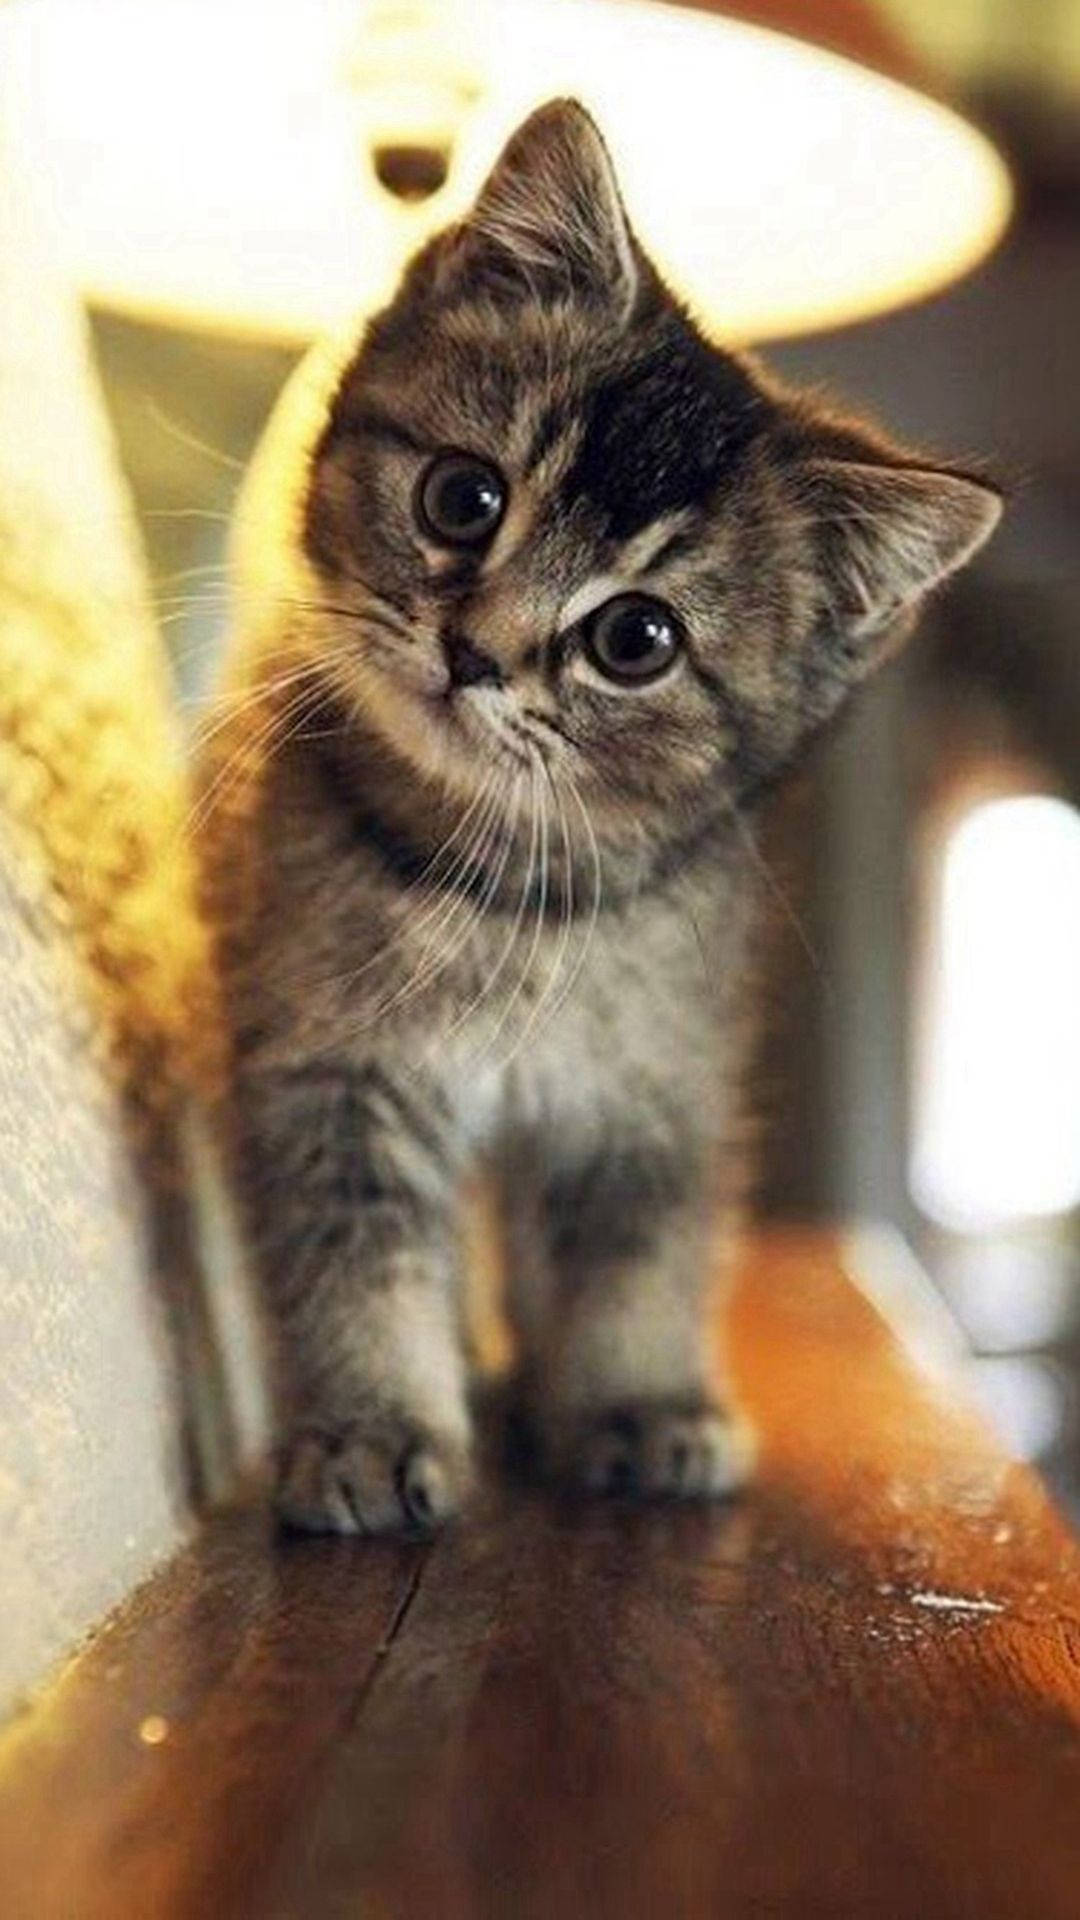 Cute Innocent Tabby Cat Iphone Wallpaper